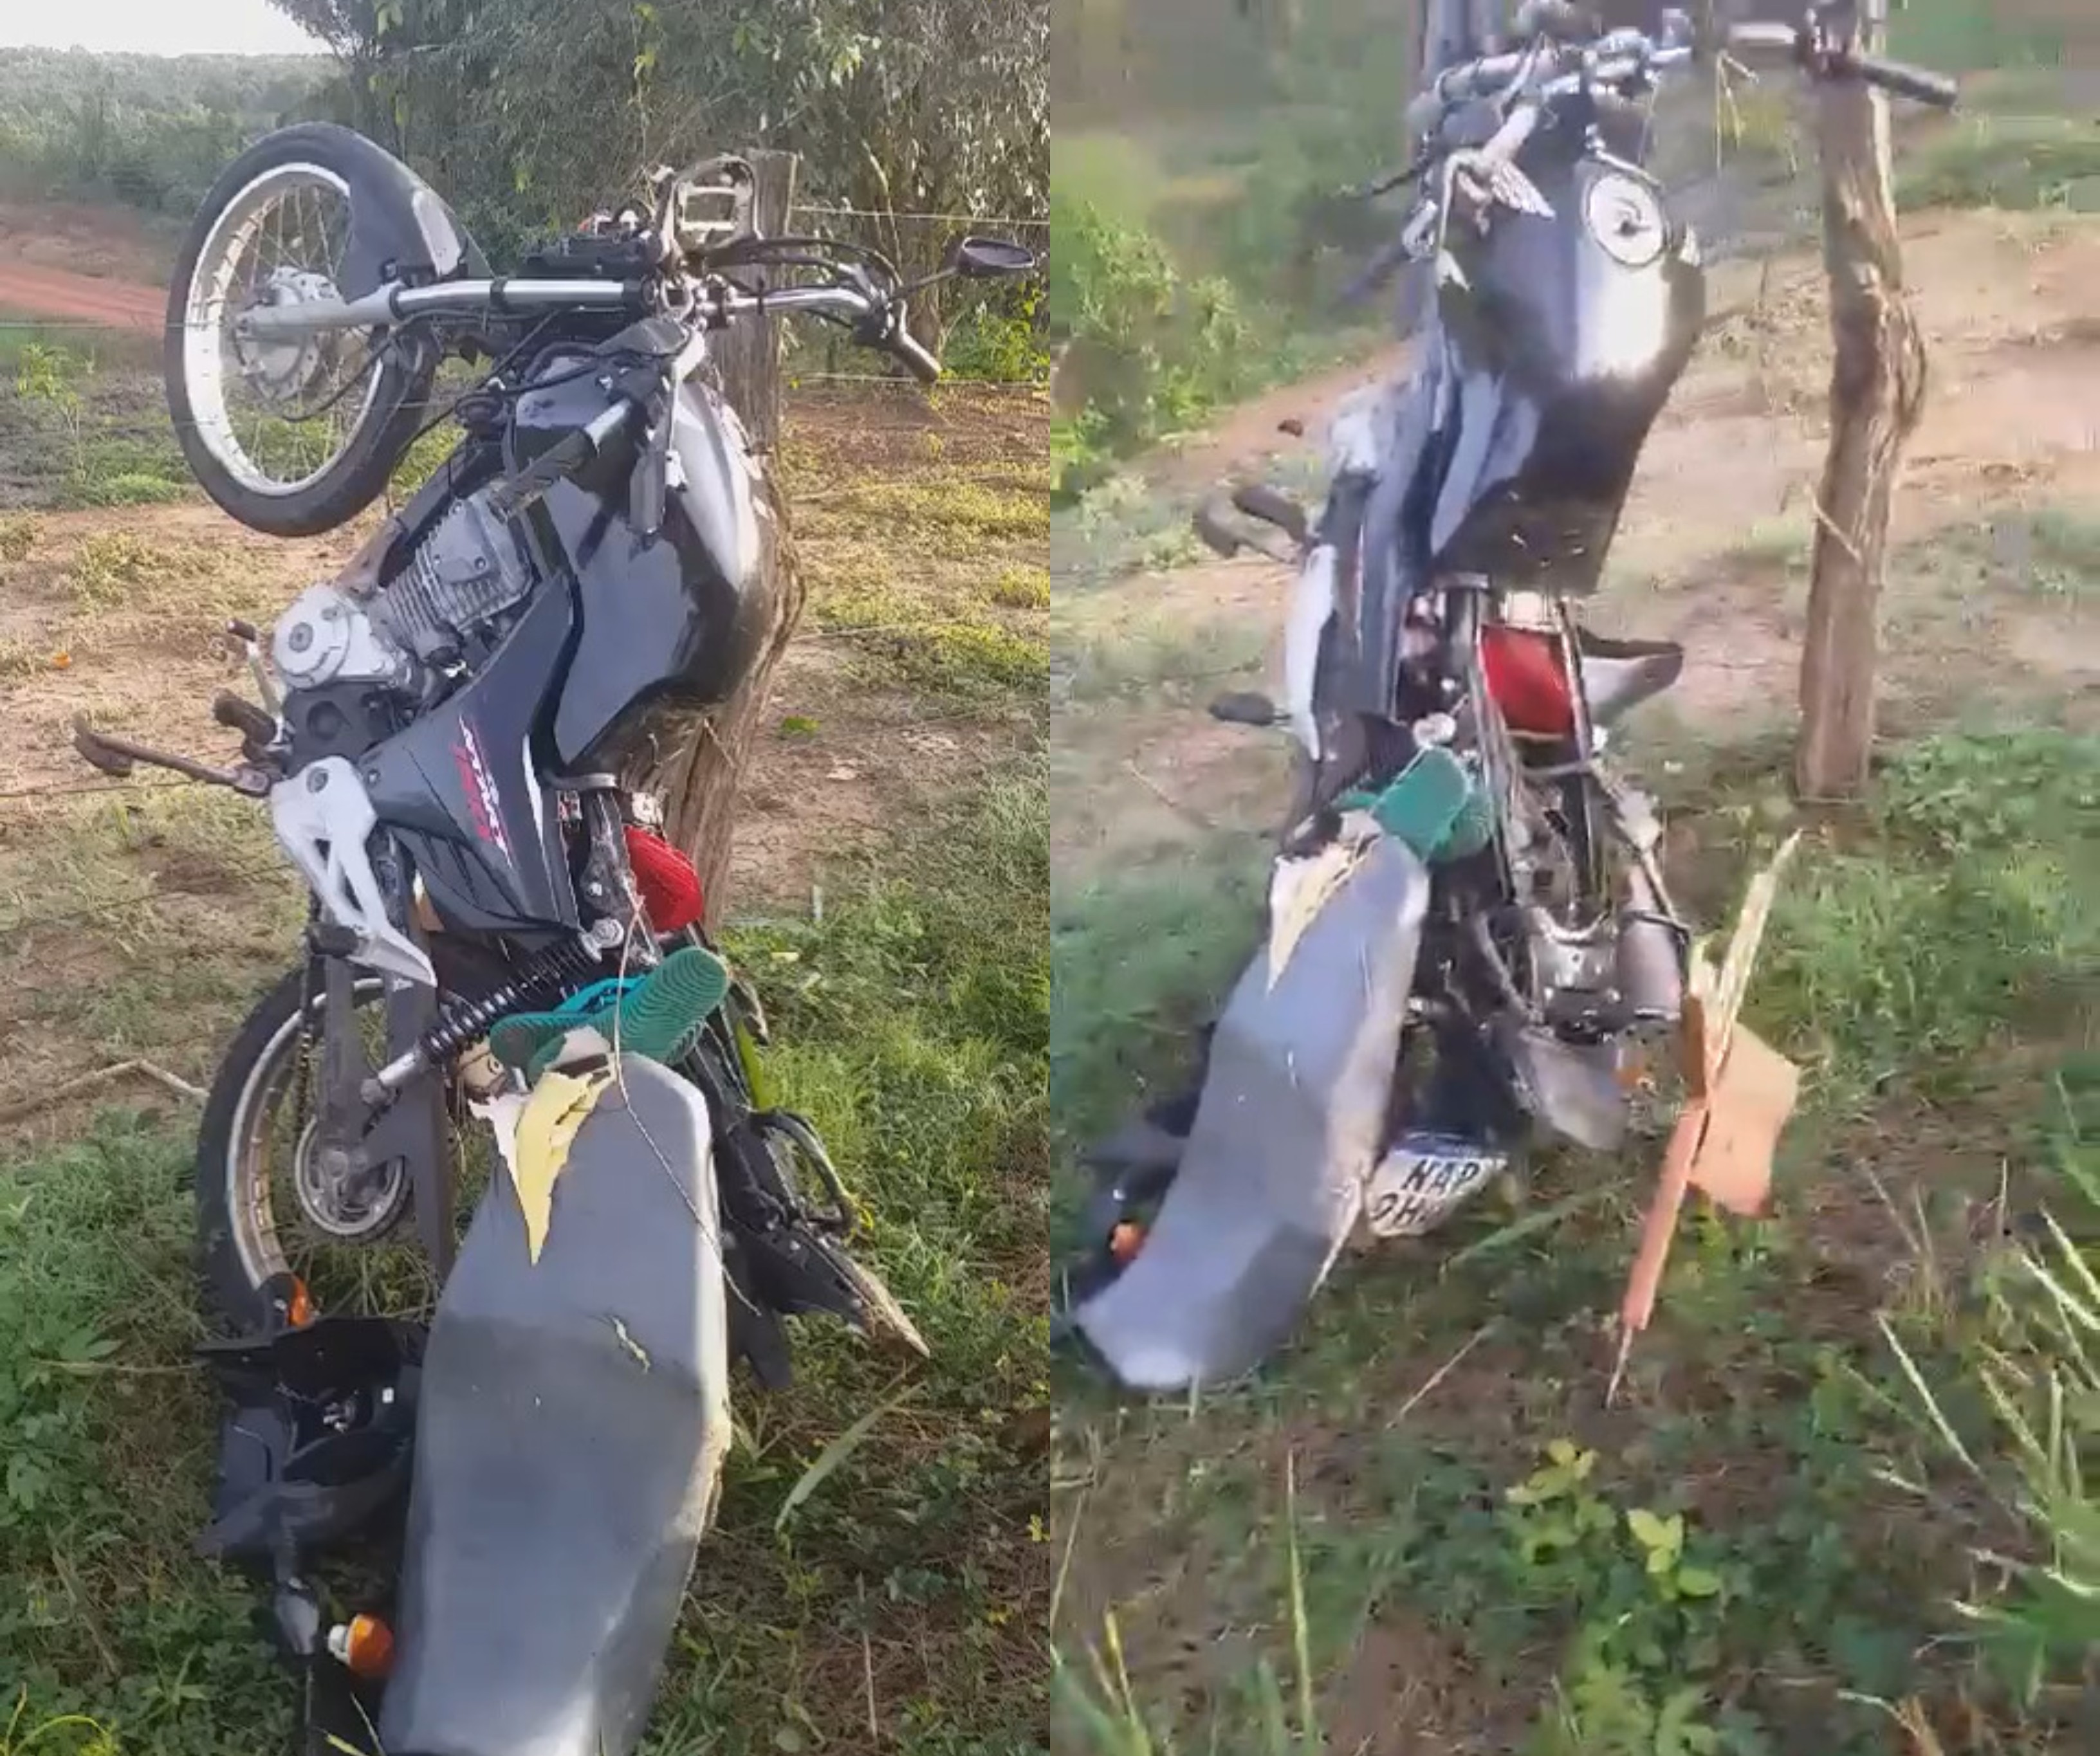 Homem morre após perder controle de moto em curva fechada em Alto Alegre, interior de Roraima